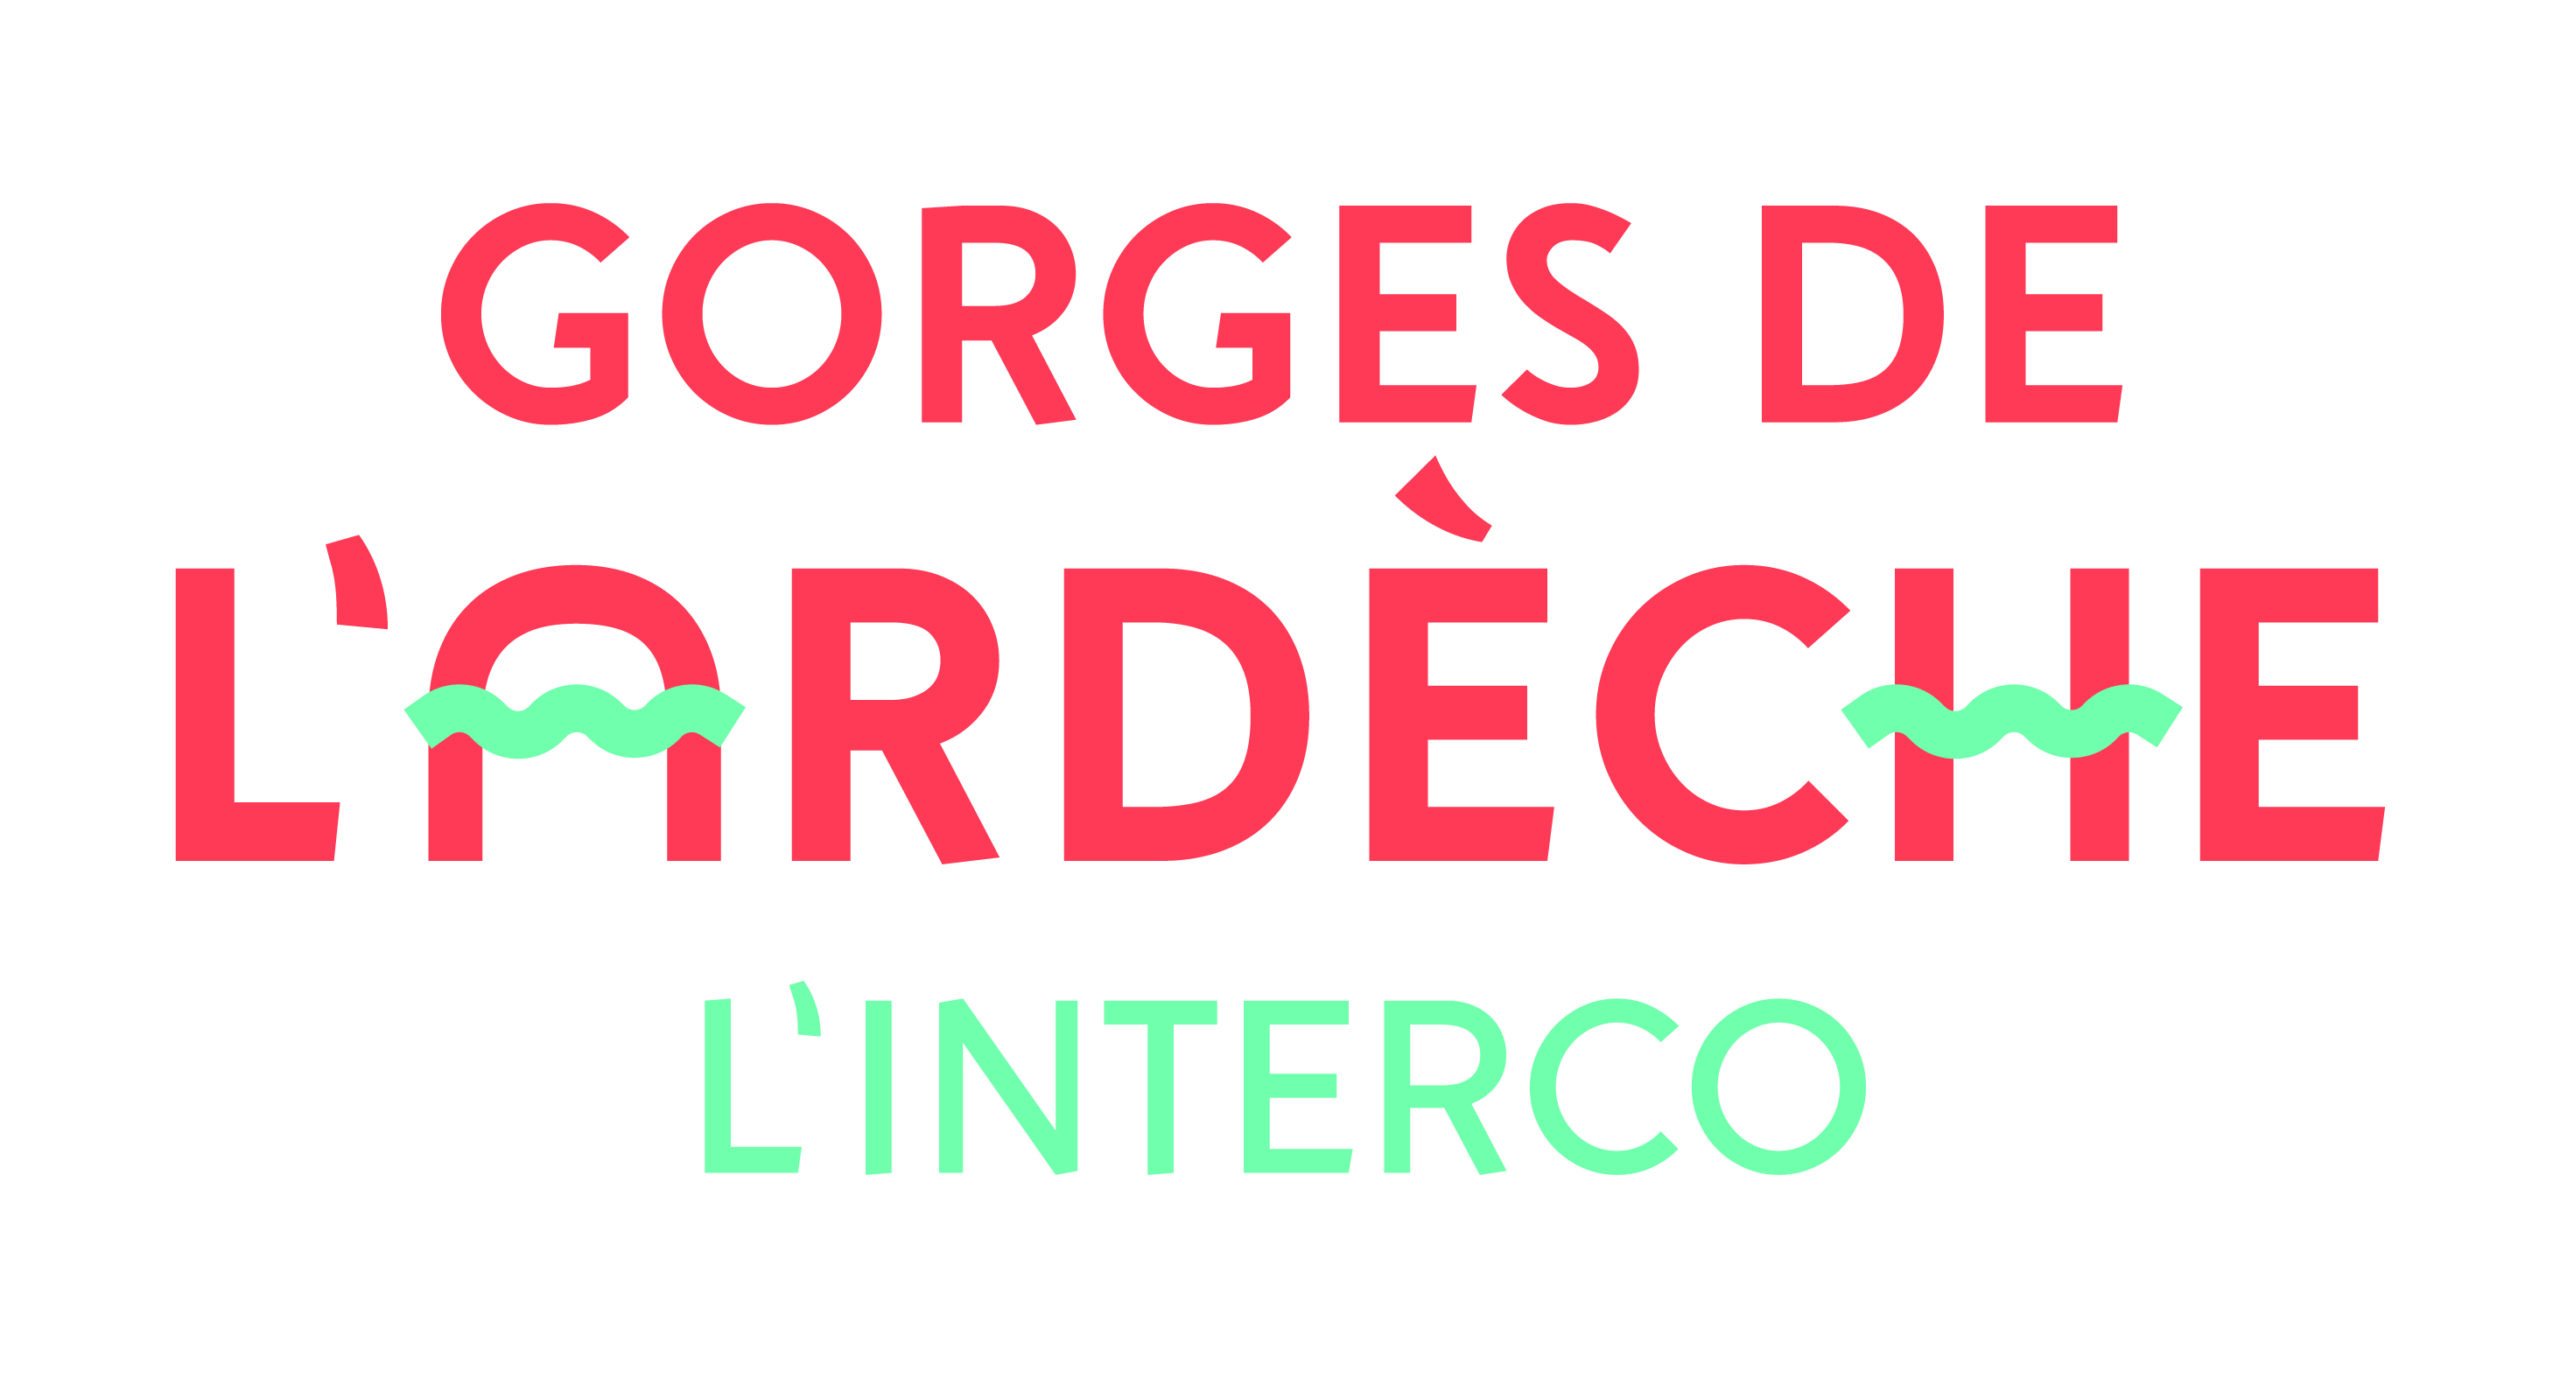 CC-Gorges-Ardeche-Logotype-3.jpg